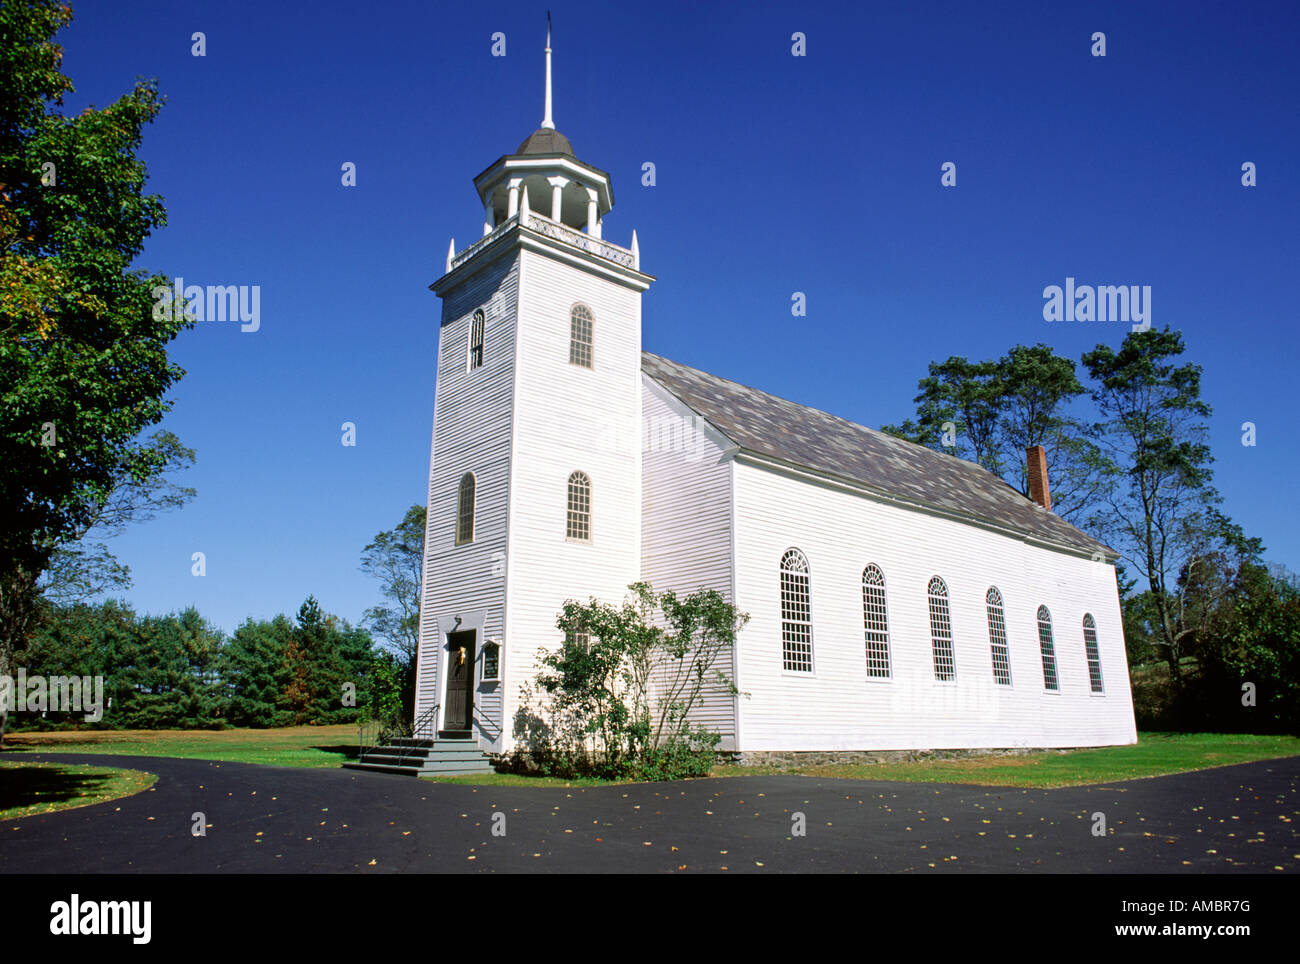 L'église en bois blanc de la Nouvelle Angleterre Banque D'Images